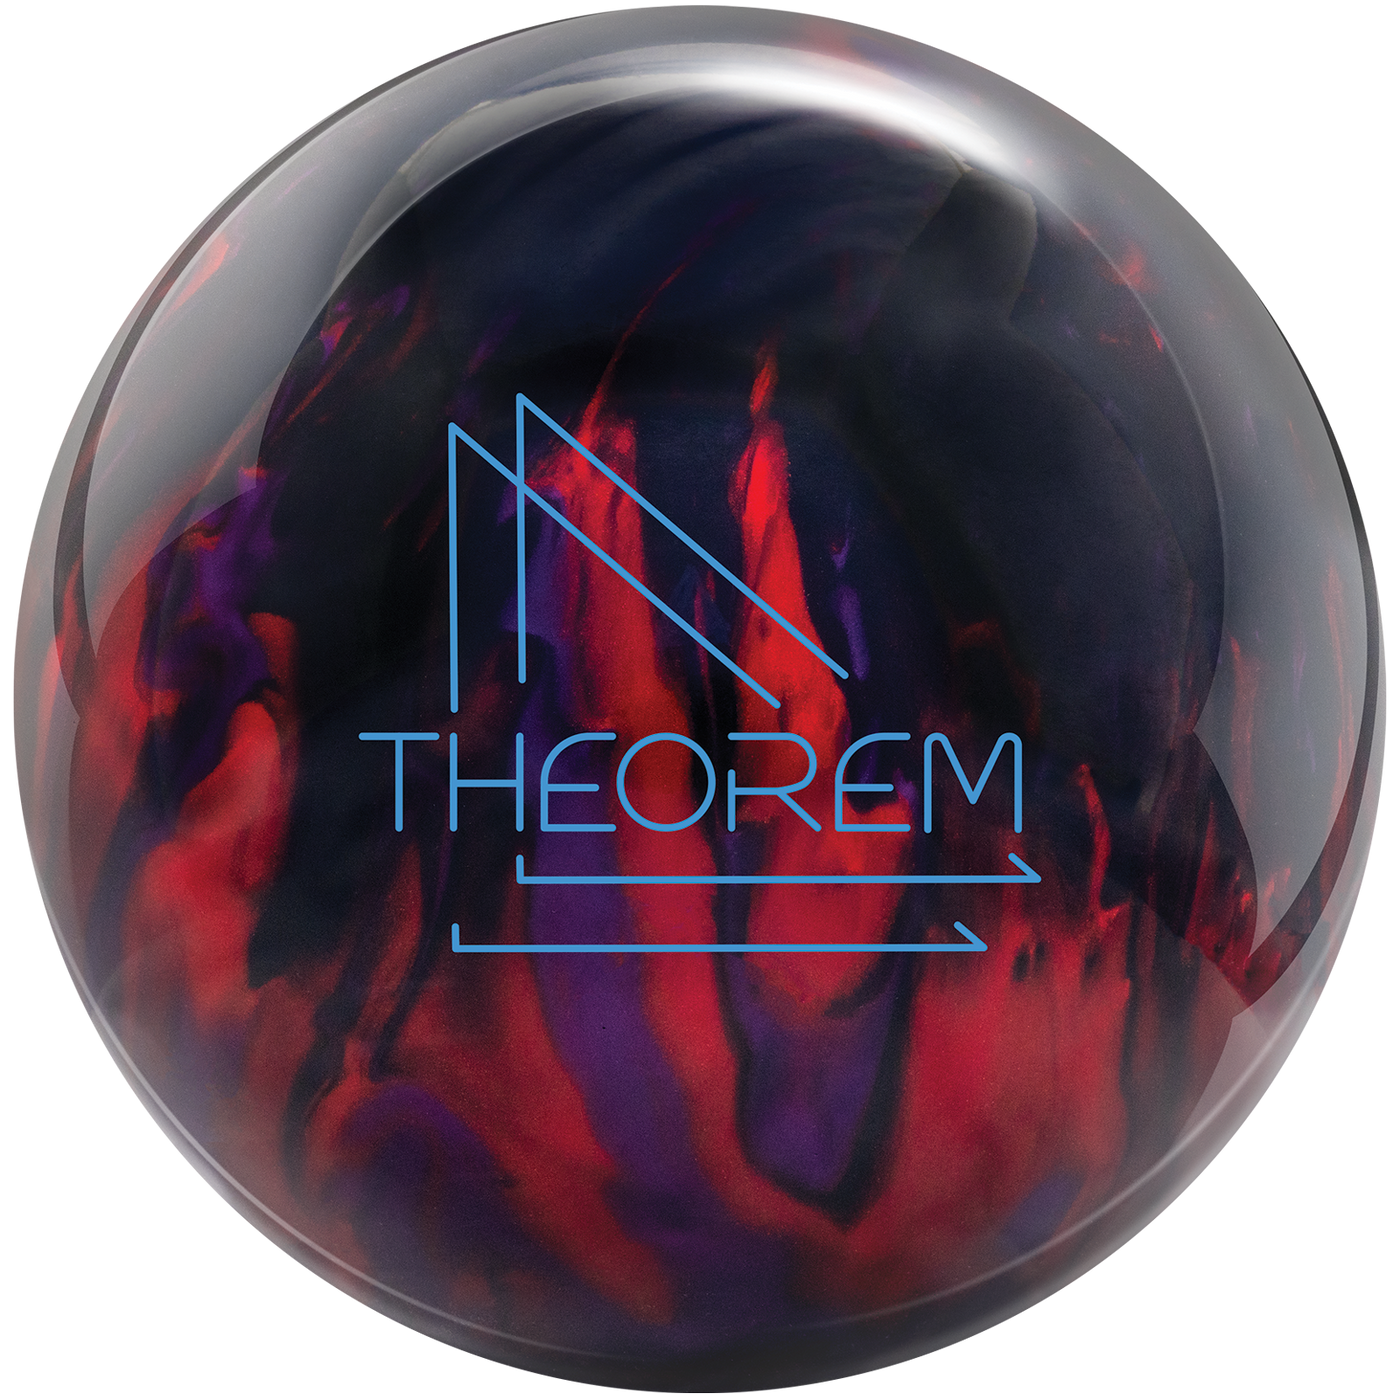 Theorem bowling ball